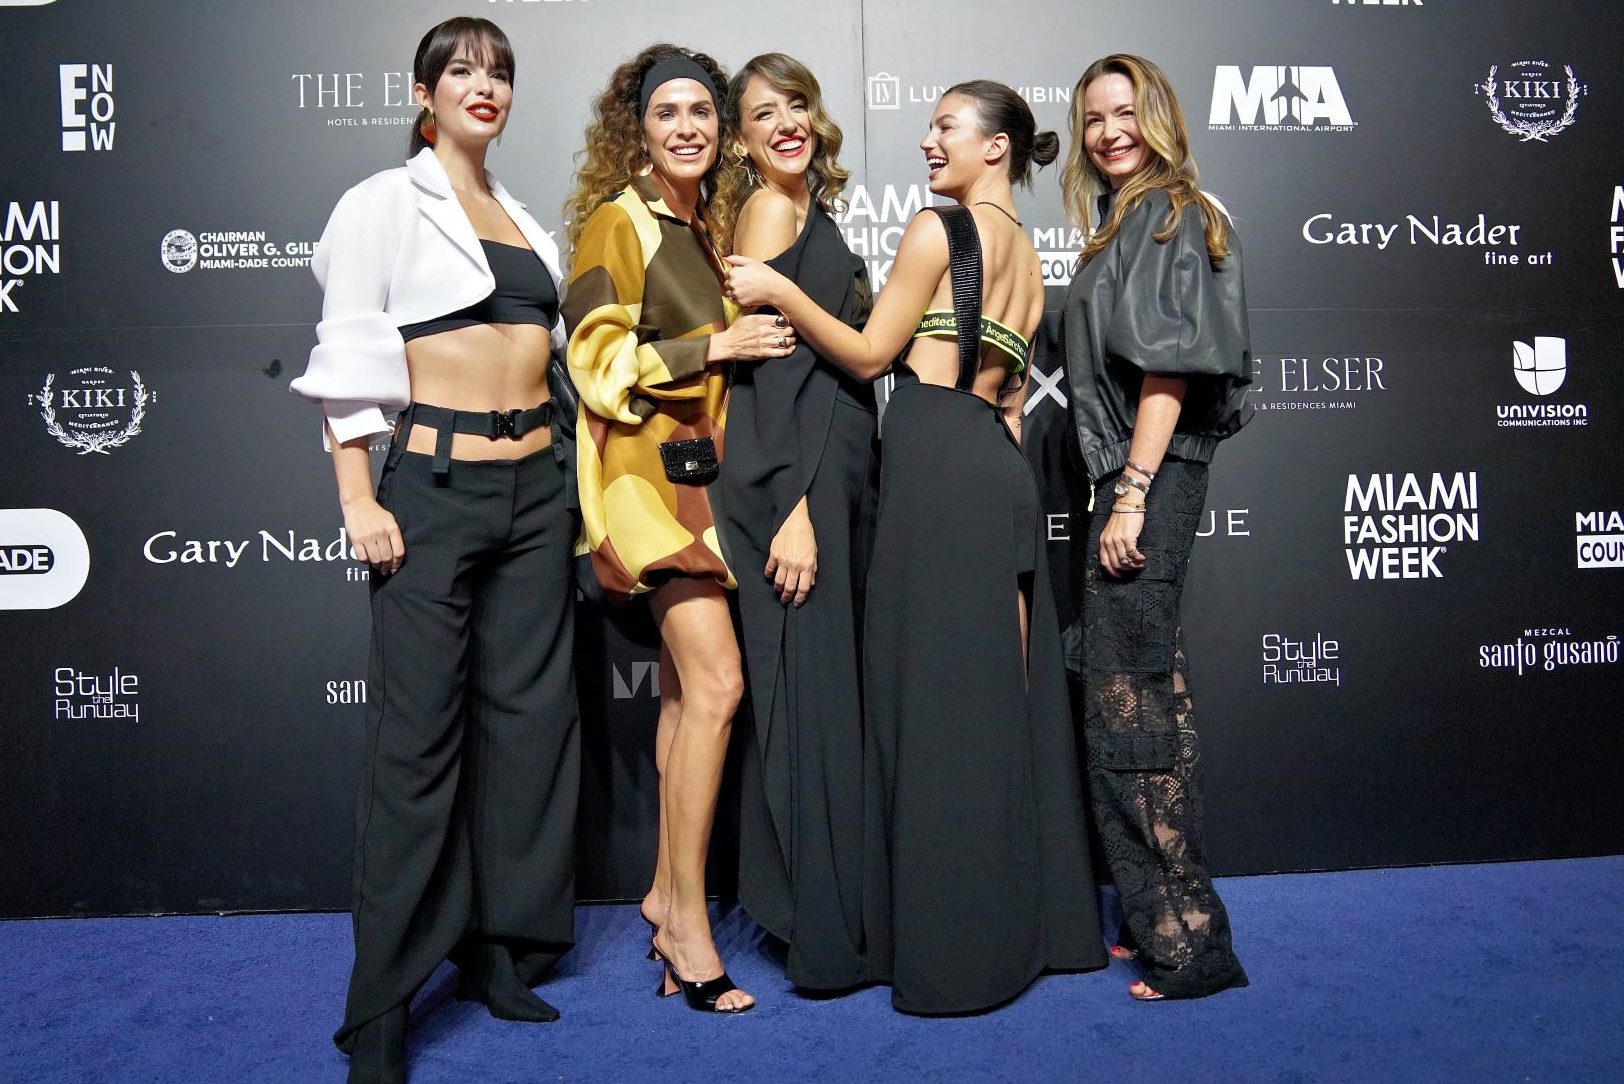 An Unforgettable Affair | Ángel Sánchez's Collection Dazzles Miami's Elite at Fashion Week Extravaganza